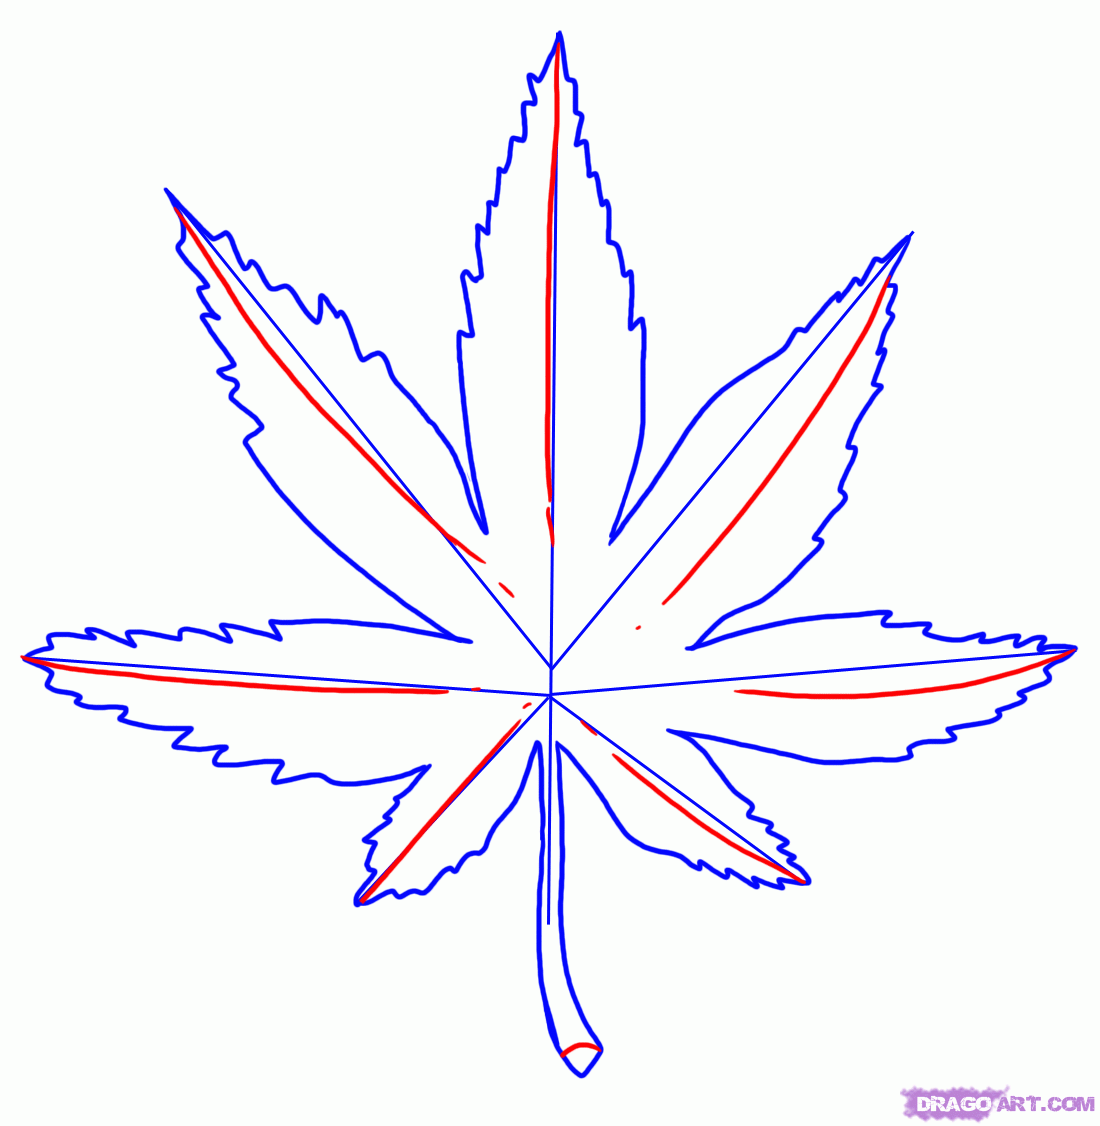 как научиться рисовать марихуану